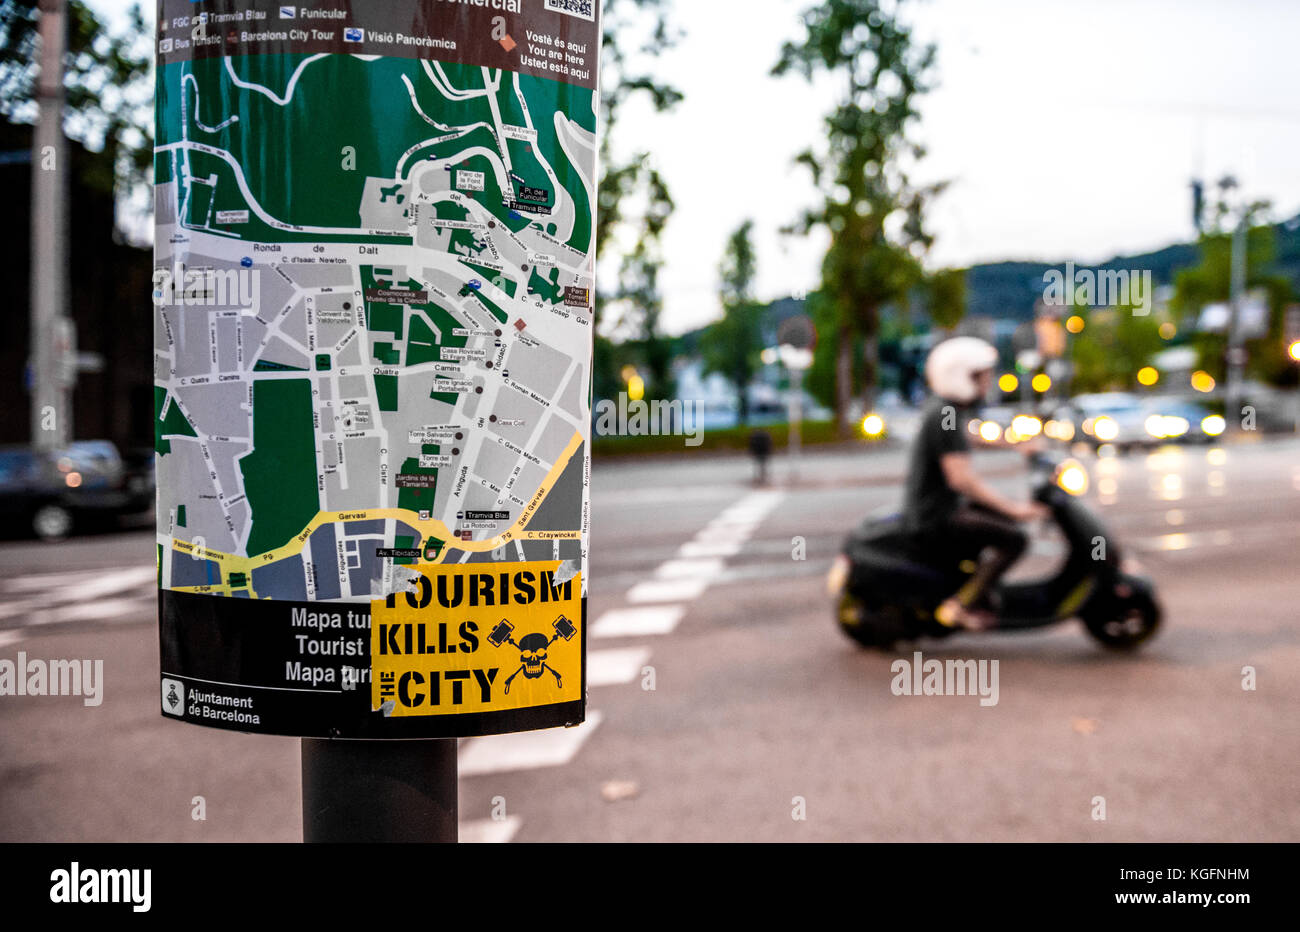 Tourisme tue la ville autocollant sur une carte routière de la ville de Barcelone, Espagne. Banque D'Images